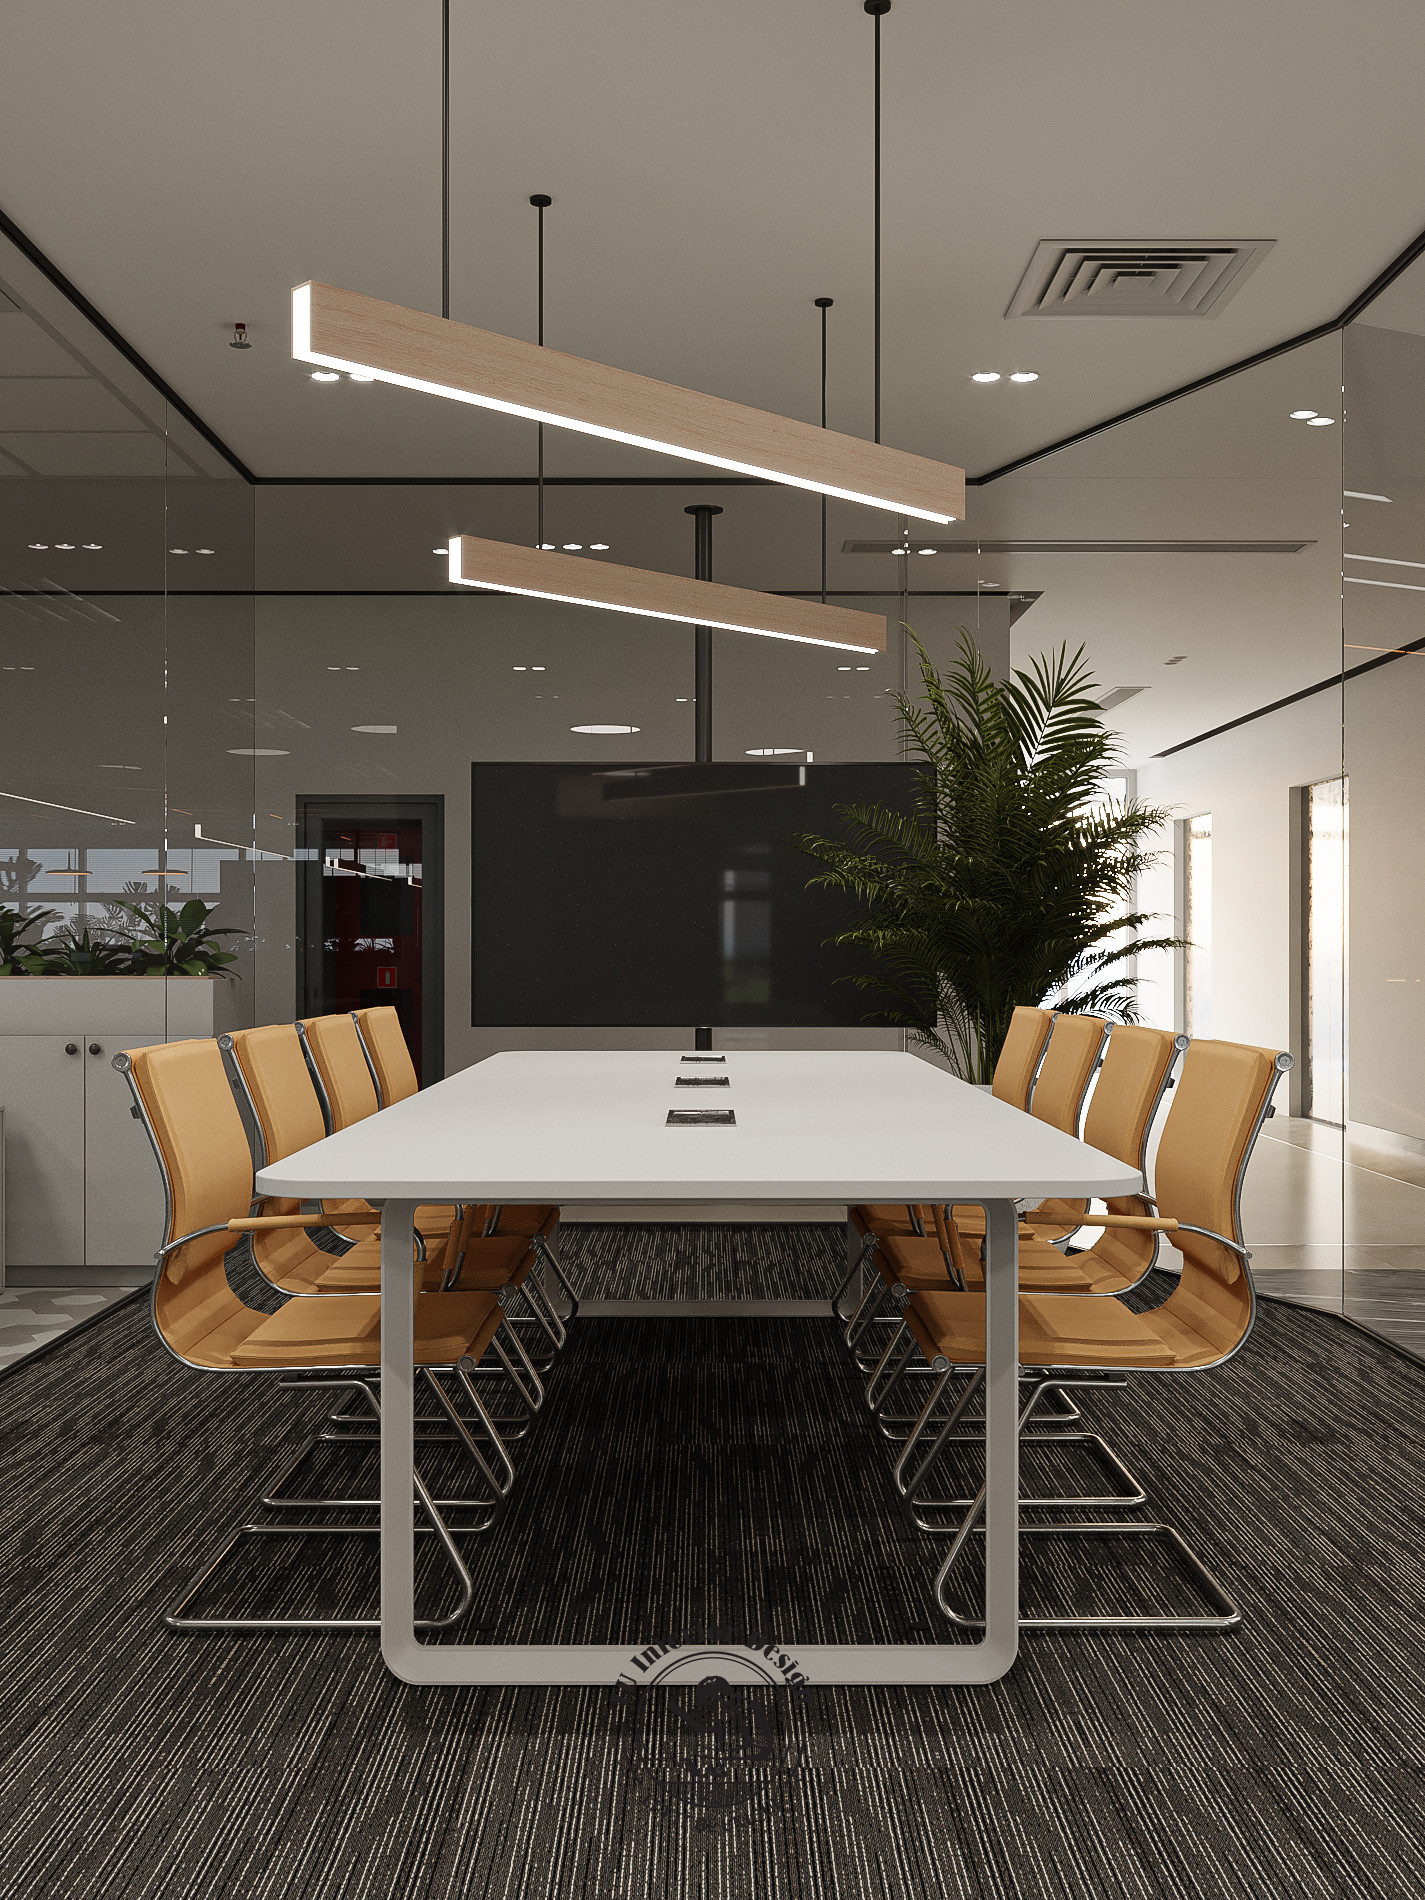 Màu sắc tươi sáng của đồ nội thất giúp không gian phòng họp trở nên hài hòa hơn | LU Design thực hiện.